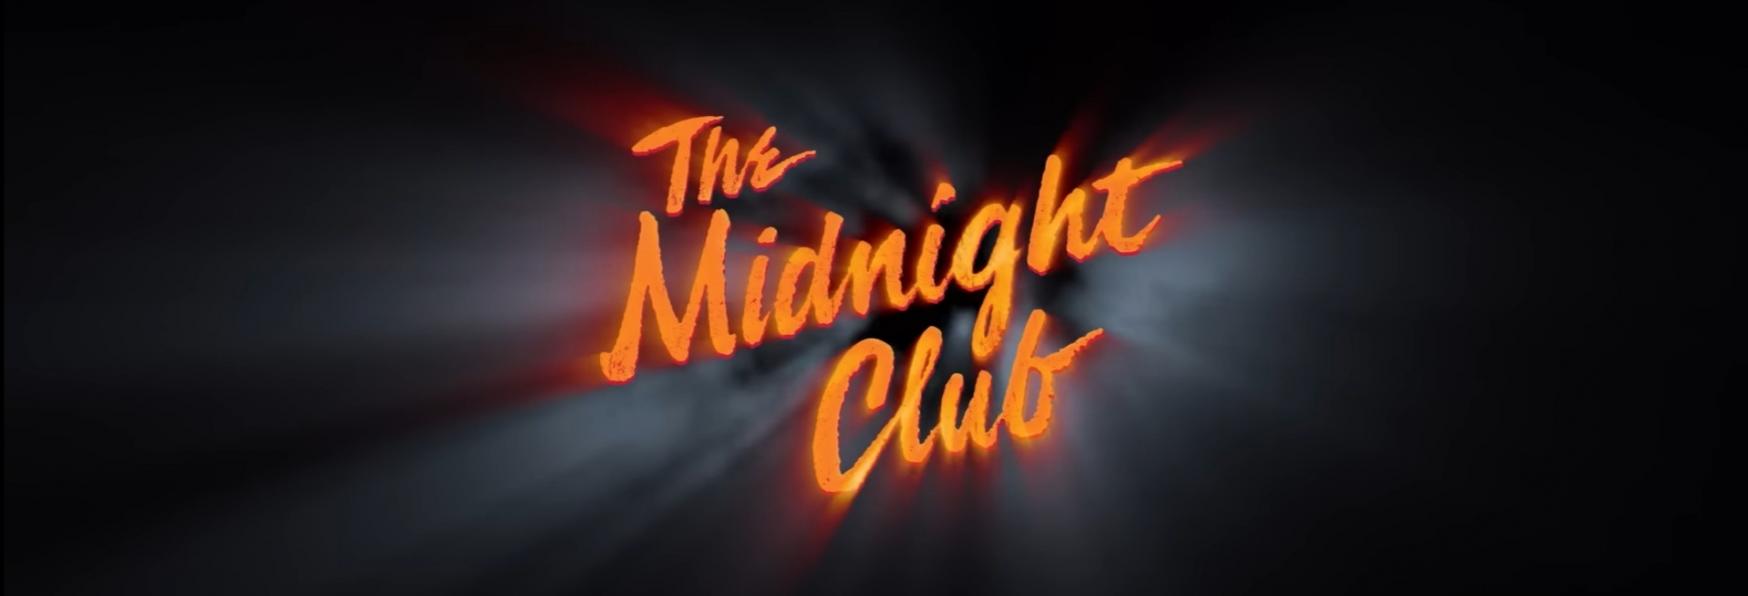 The Midnight Club: Netflix rilascia il Trailer Ufficiale della nuova Serie TV di Mike Flanagan